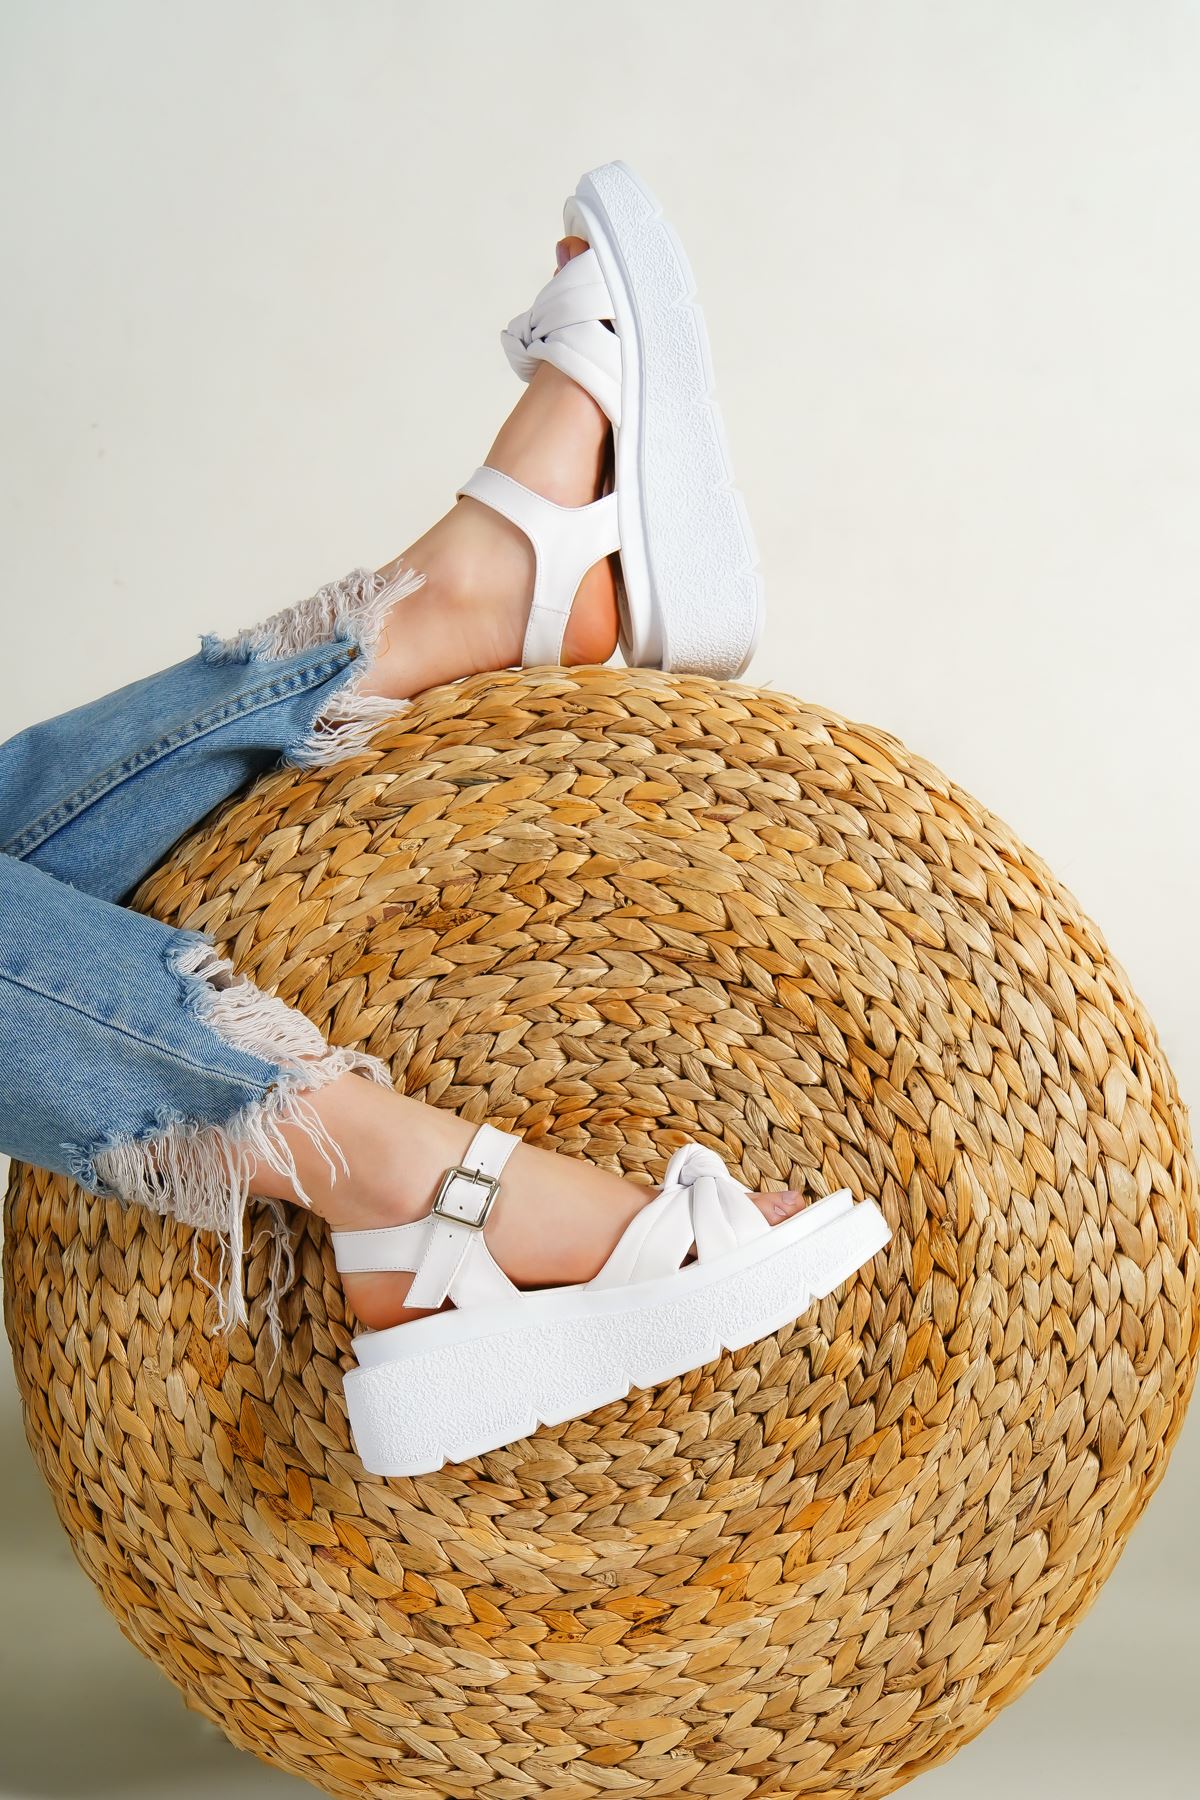 Rodya Beyaz Fiyonk Detay Dolgu Topuklu Ayakkabı